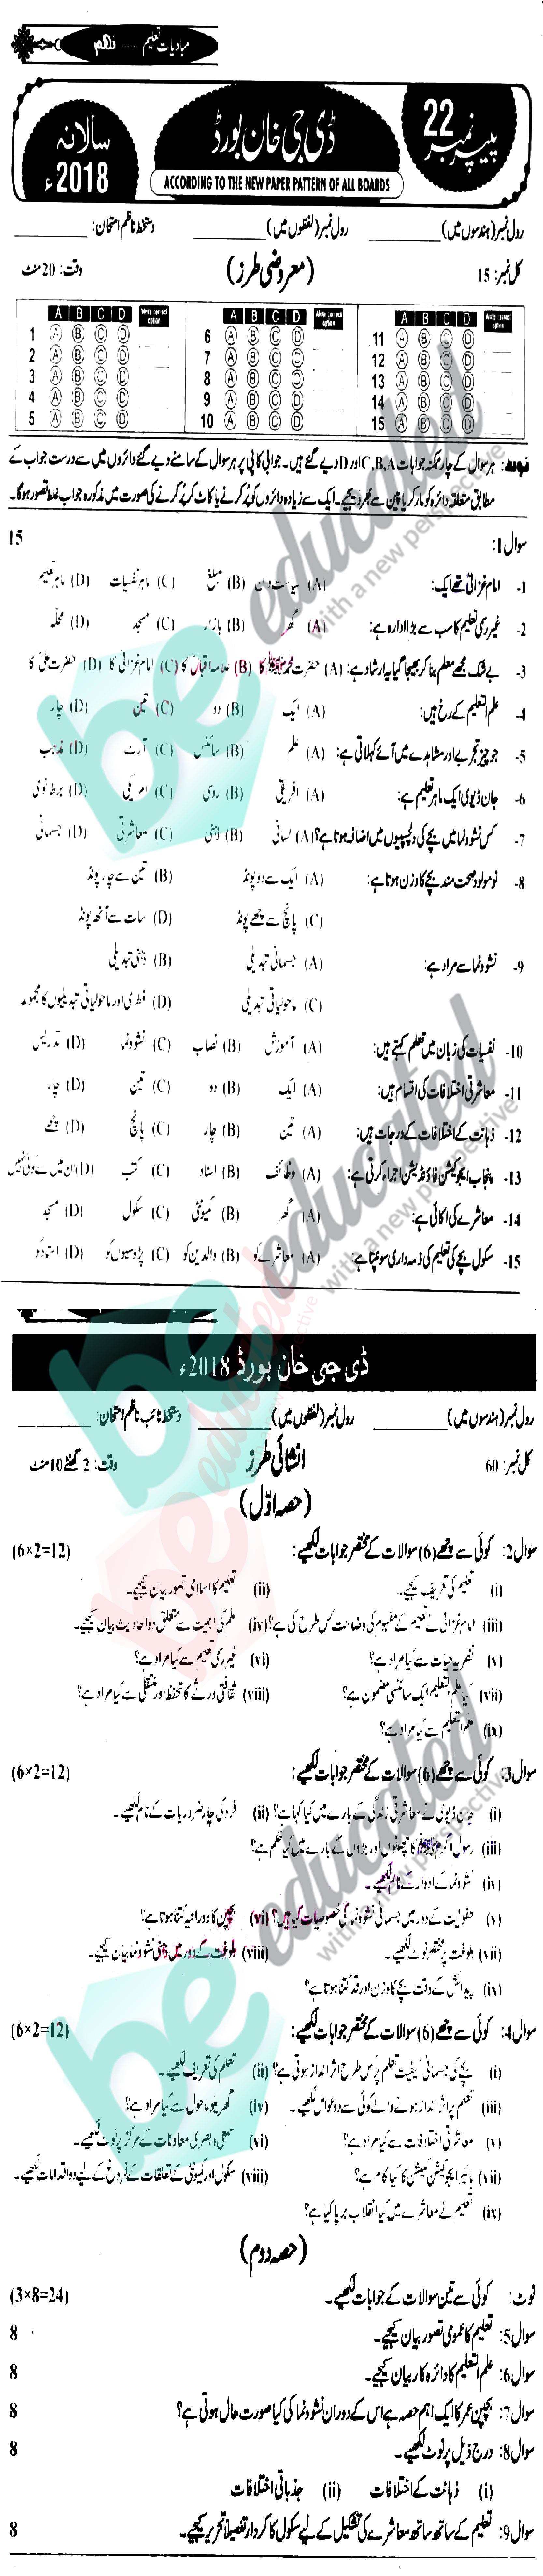 Education 9th Class Urdu Medium Past Paper Group 1 BISE DG Khan 2018